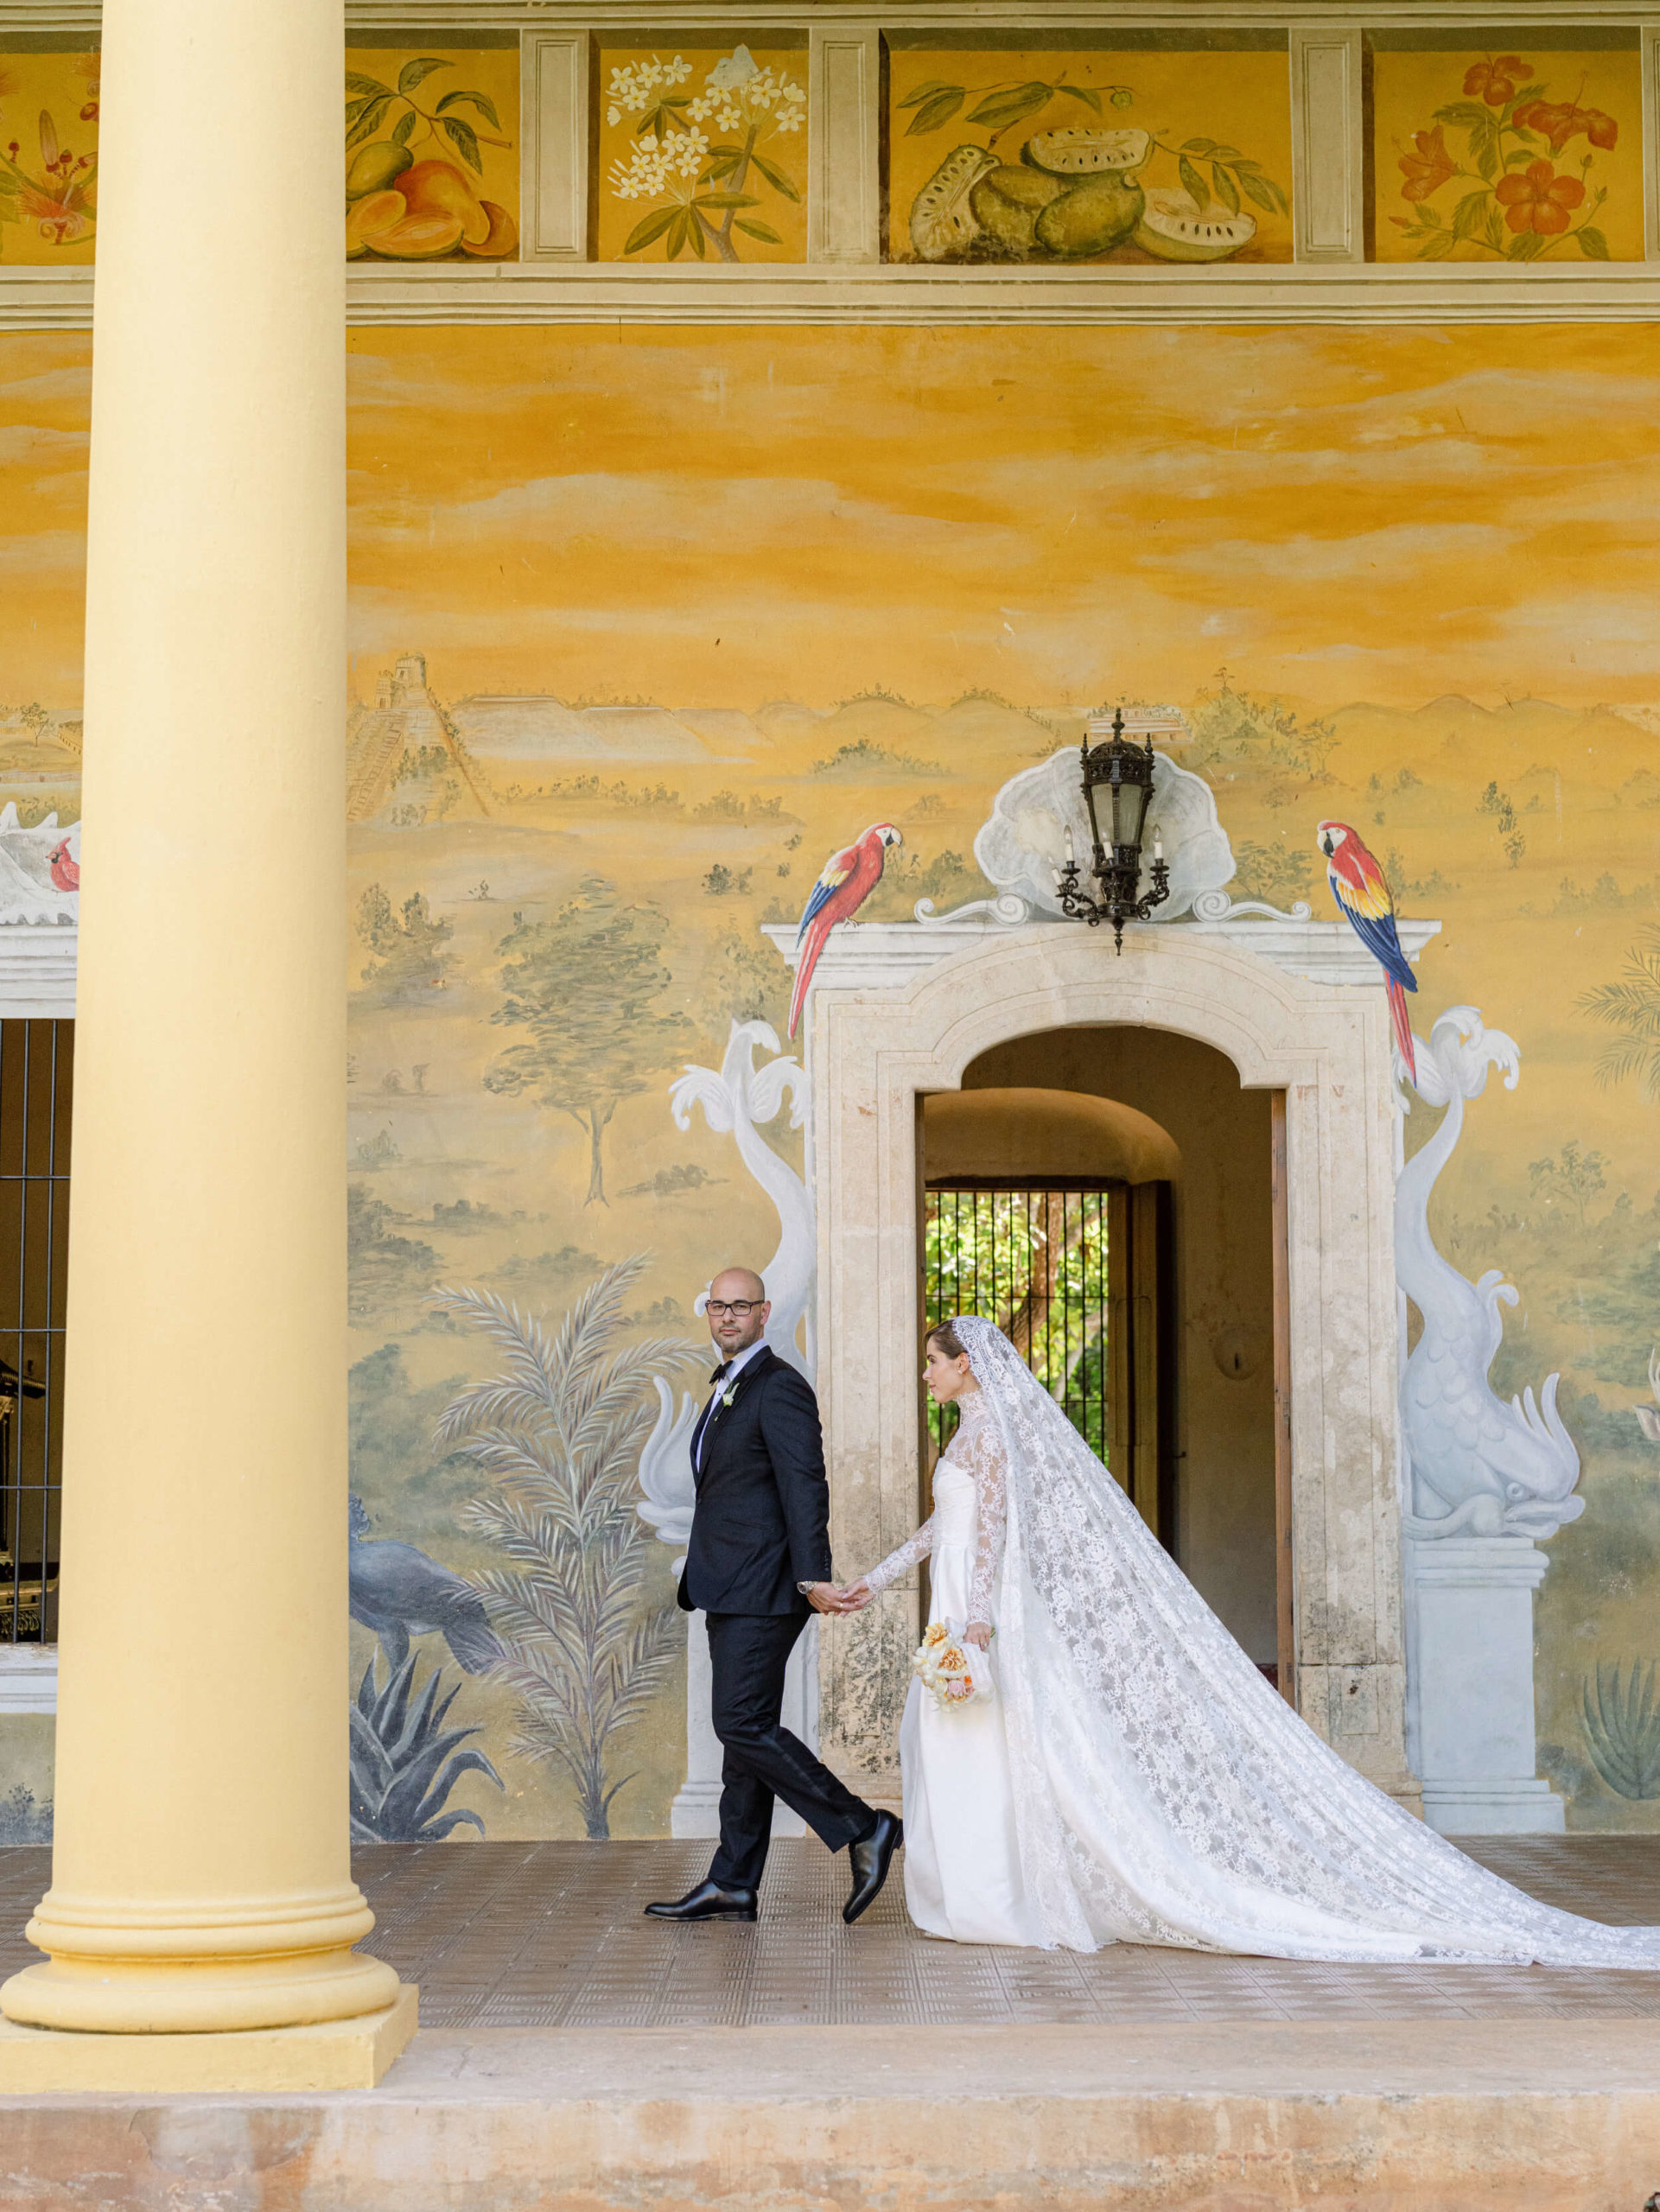 Bride and groom walking in front of elaborate mural